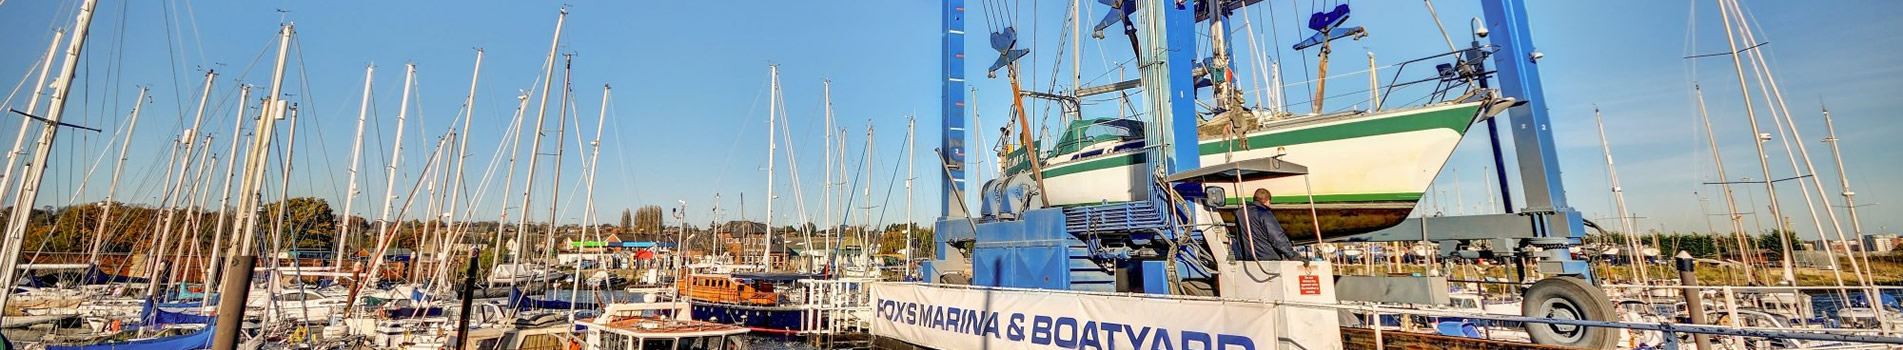 Fox’s Marina & Boatyard